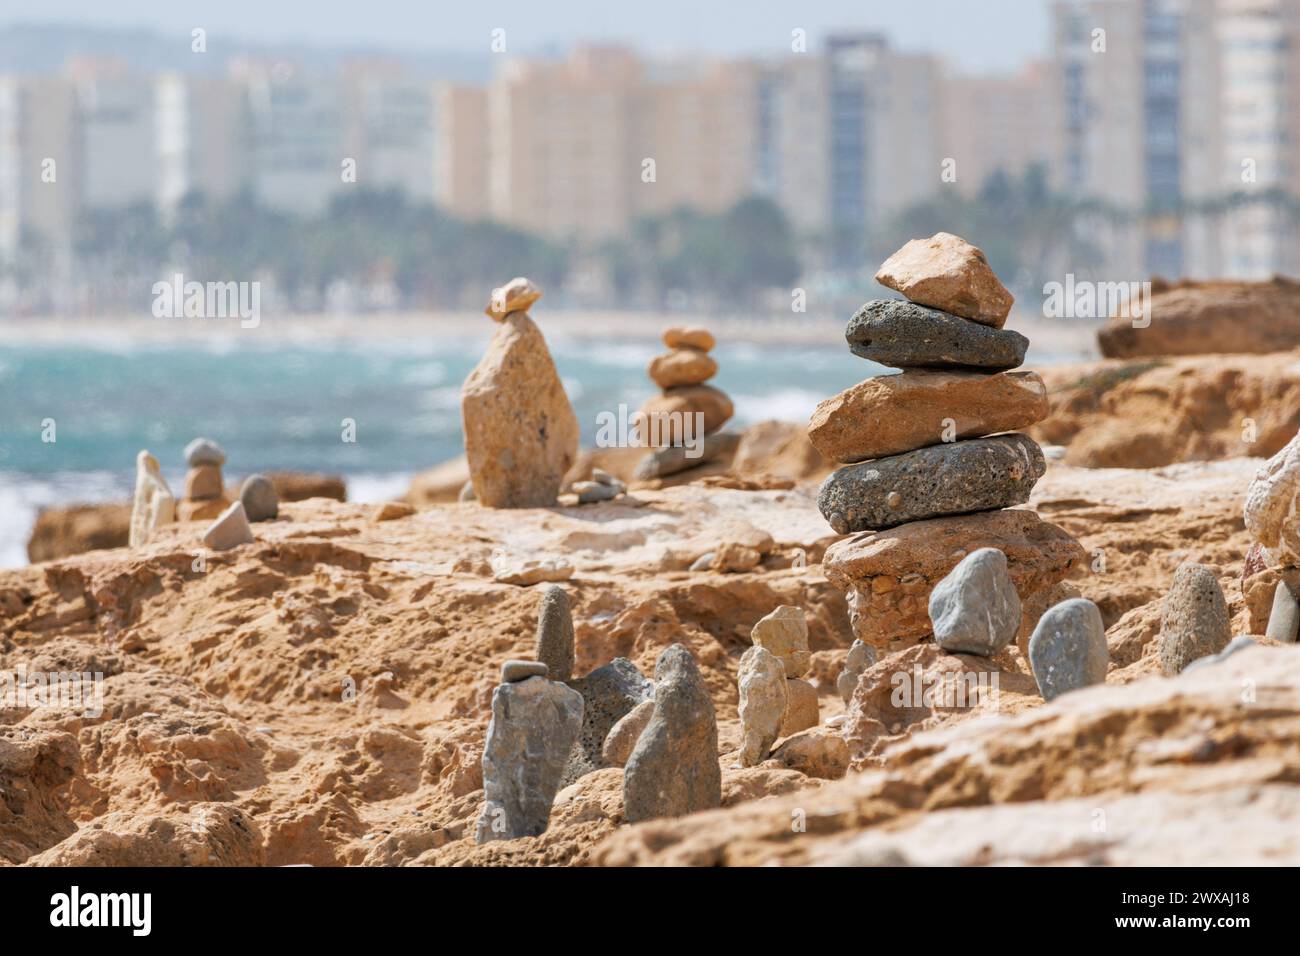 Stone cairns on the beach of the Agua Amarga salt marsh, Alicante, Spain Stock Photo